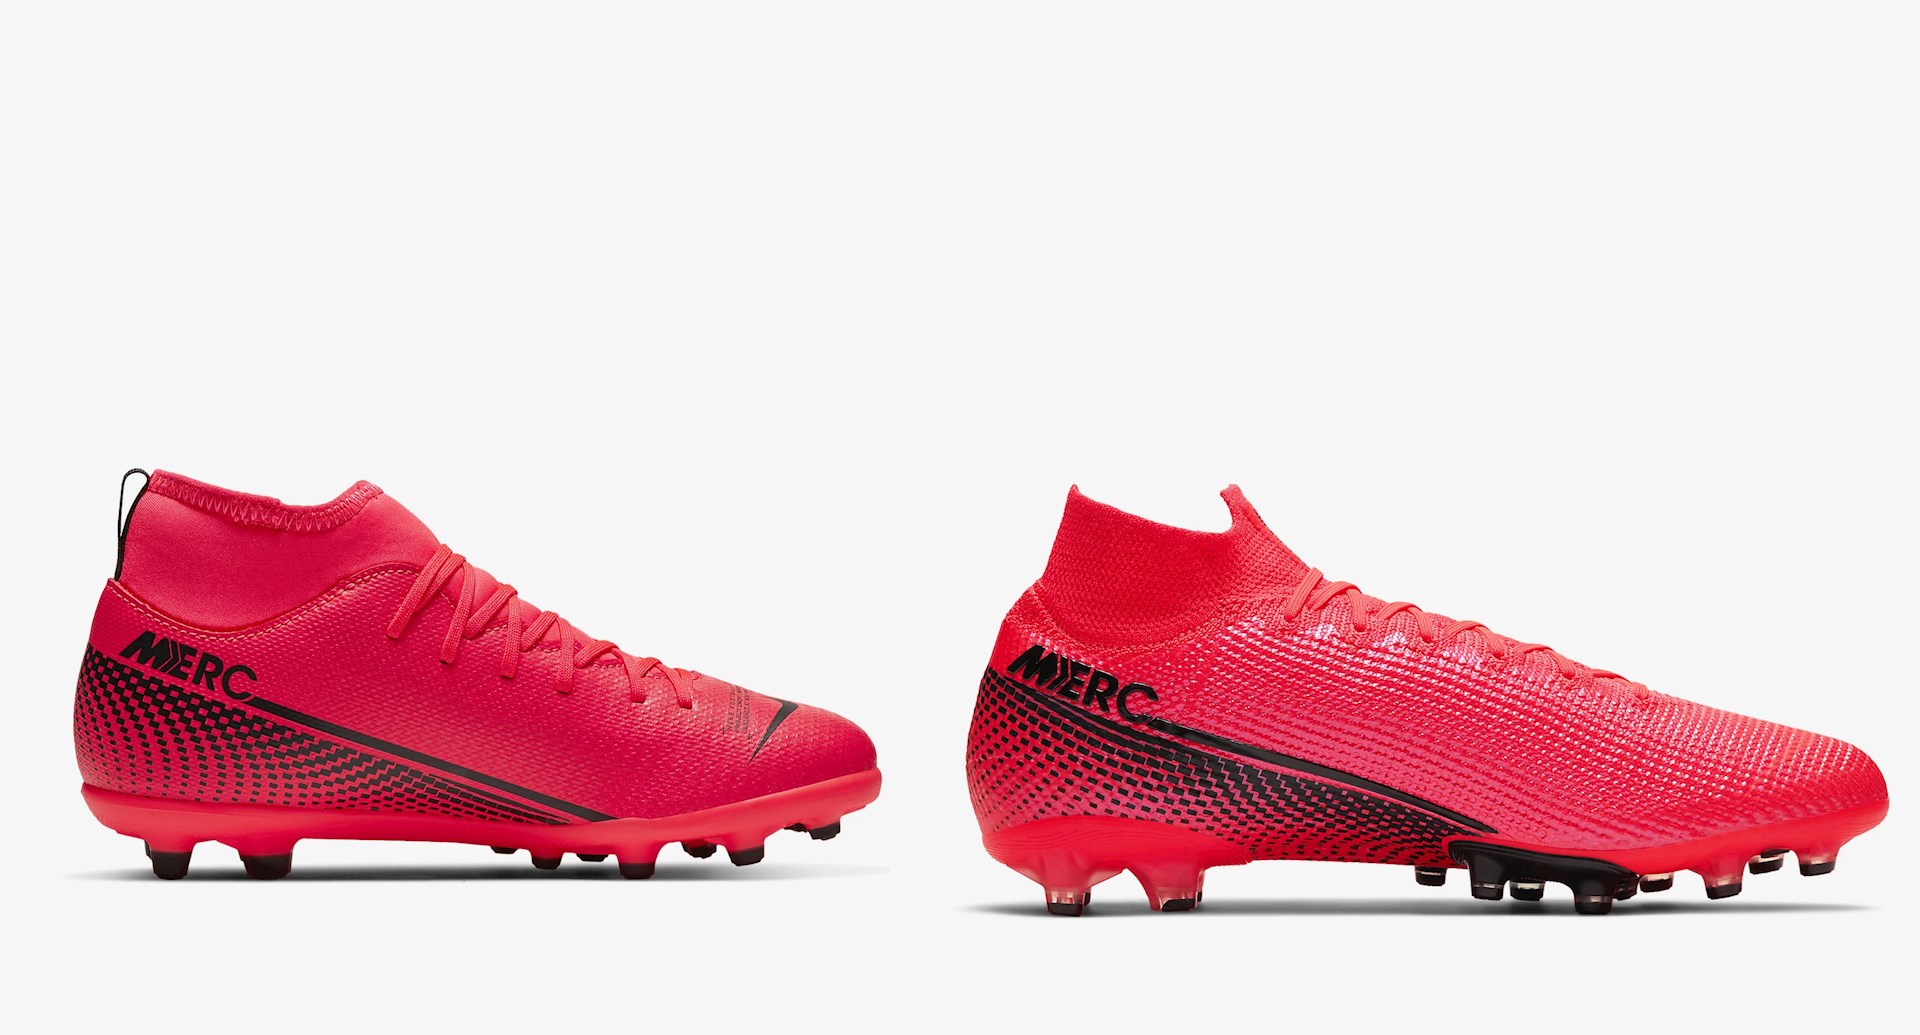 lettergreep Handvest Uit Goedkope Nike Mercurial Superfly voetbalschoenen - Voetbal-schoenen.eu